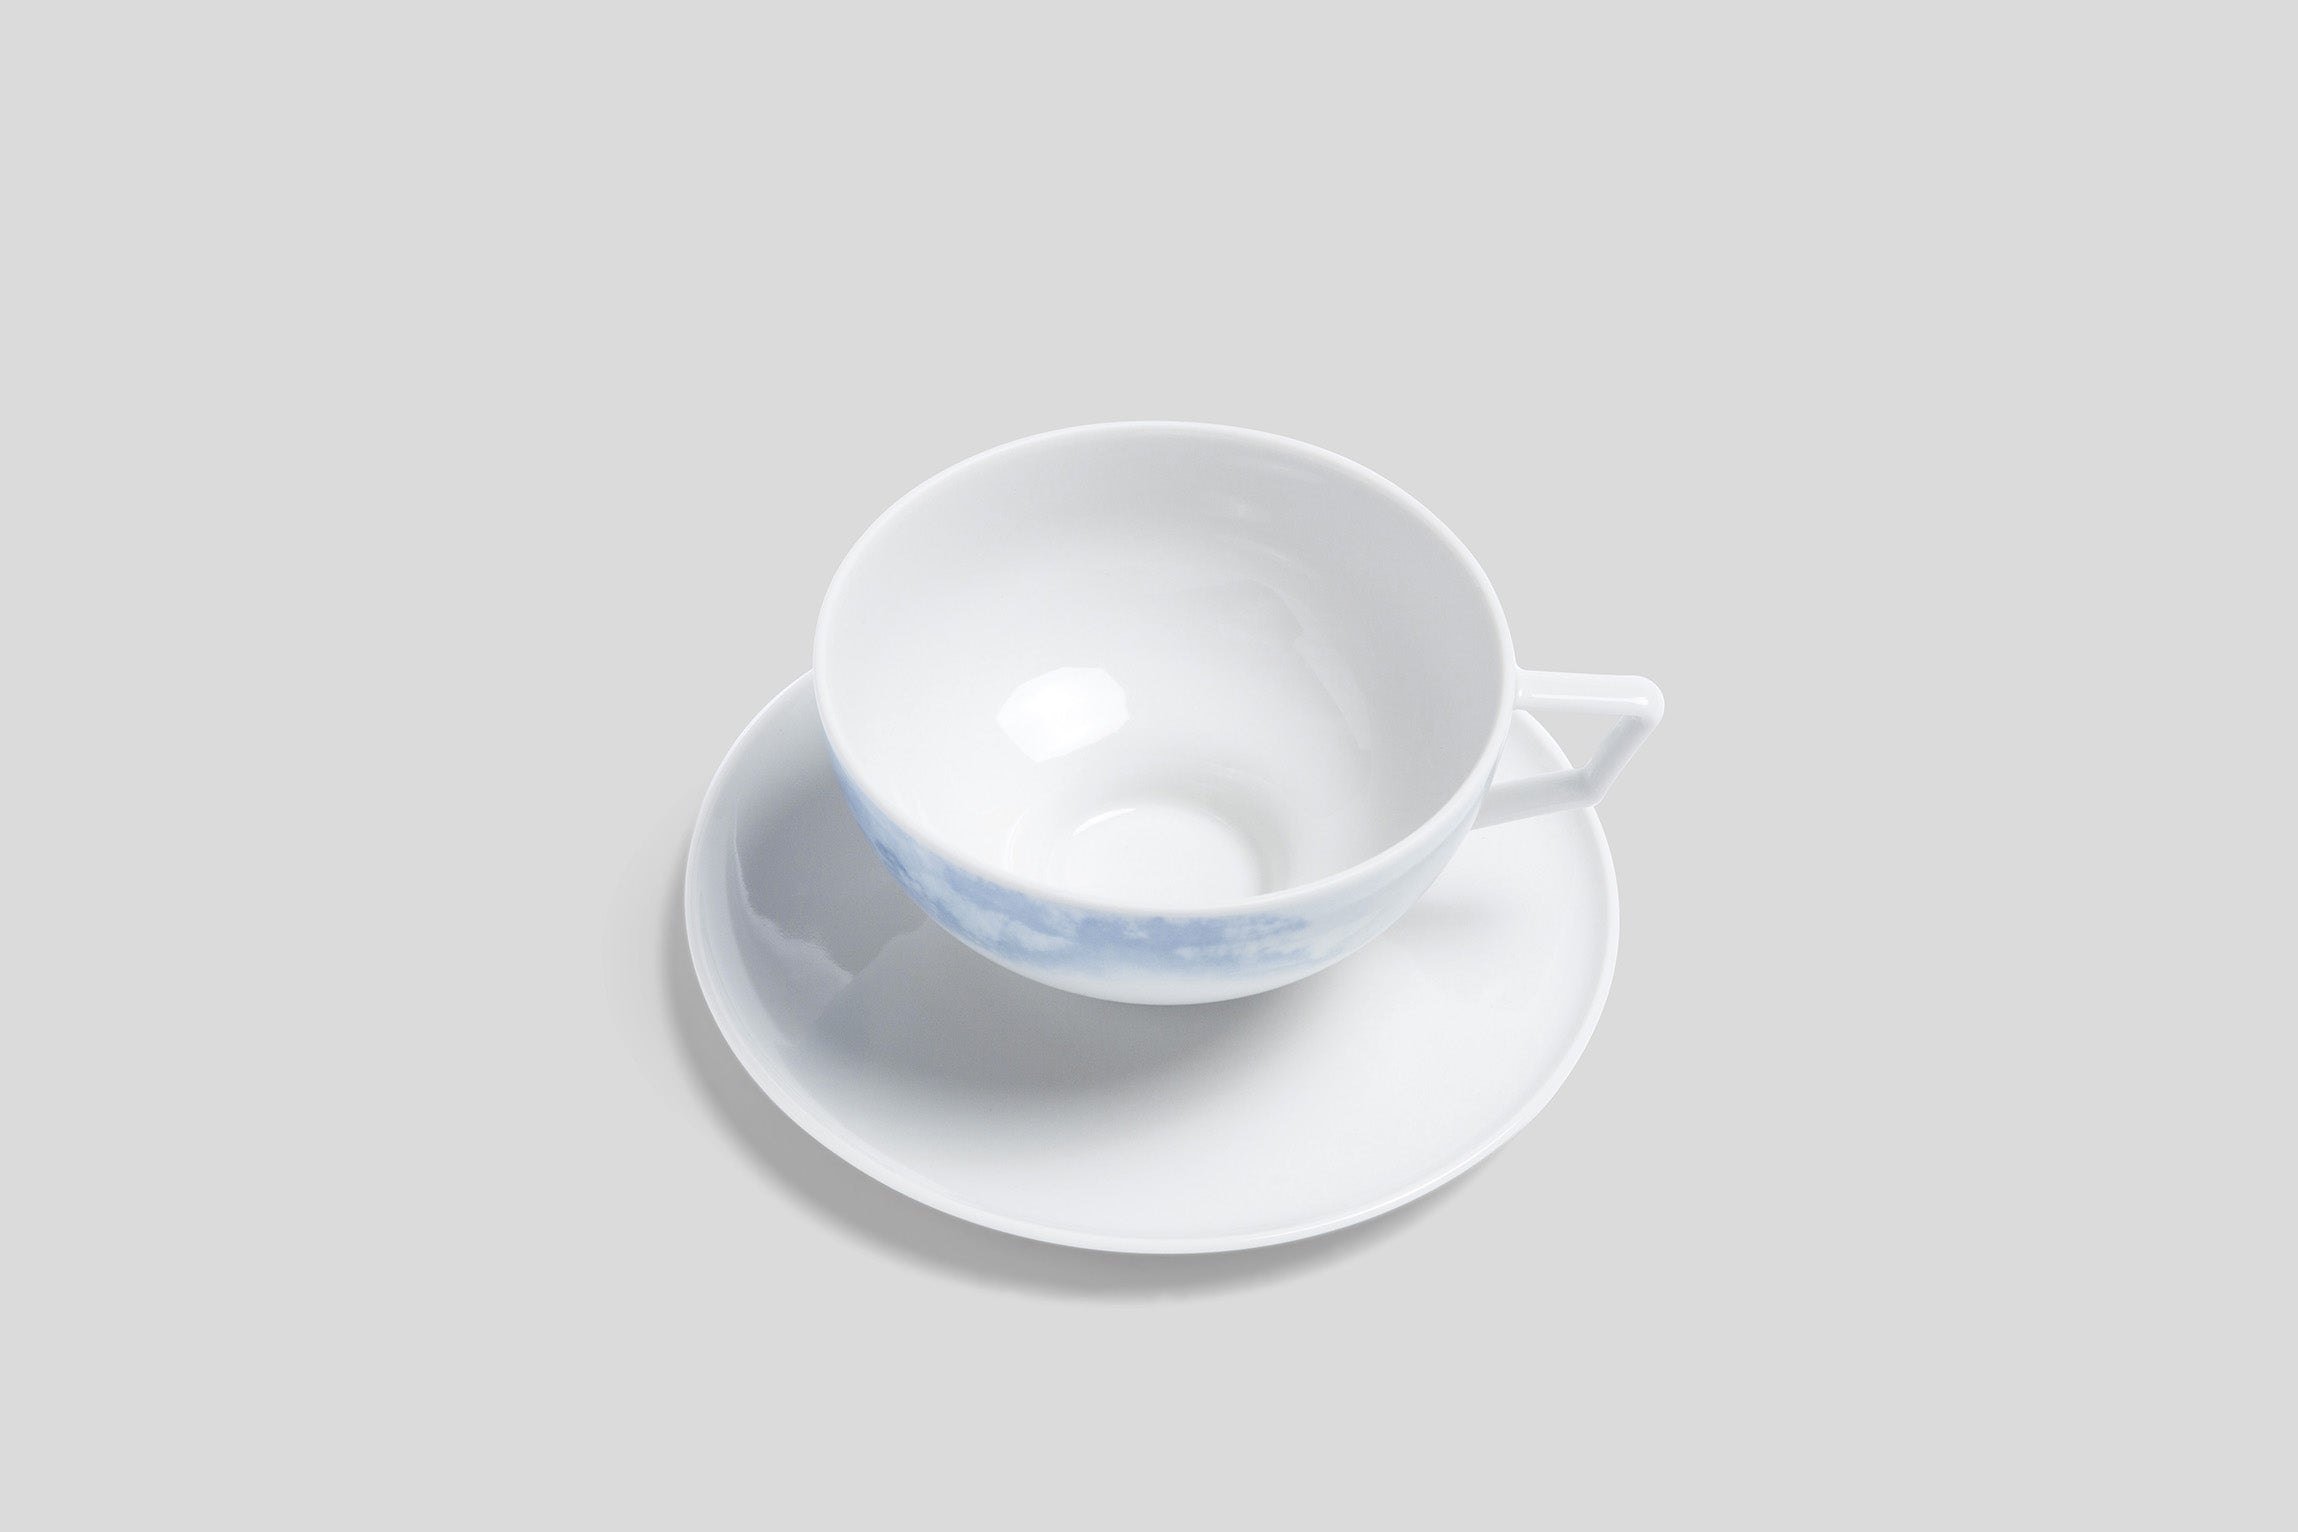 Designer-Luxury-Modern-Bodo Sperlein Pomona Tempest Teacup & Saucer-Bodo Sperlein-Bodo Sperlein-Bone China-Designer-Luxury-Modern-Tasse-Becher-Kaffee Tasse